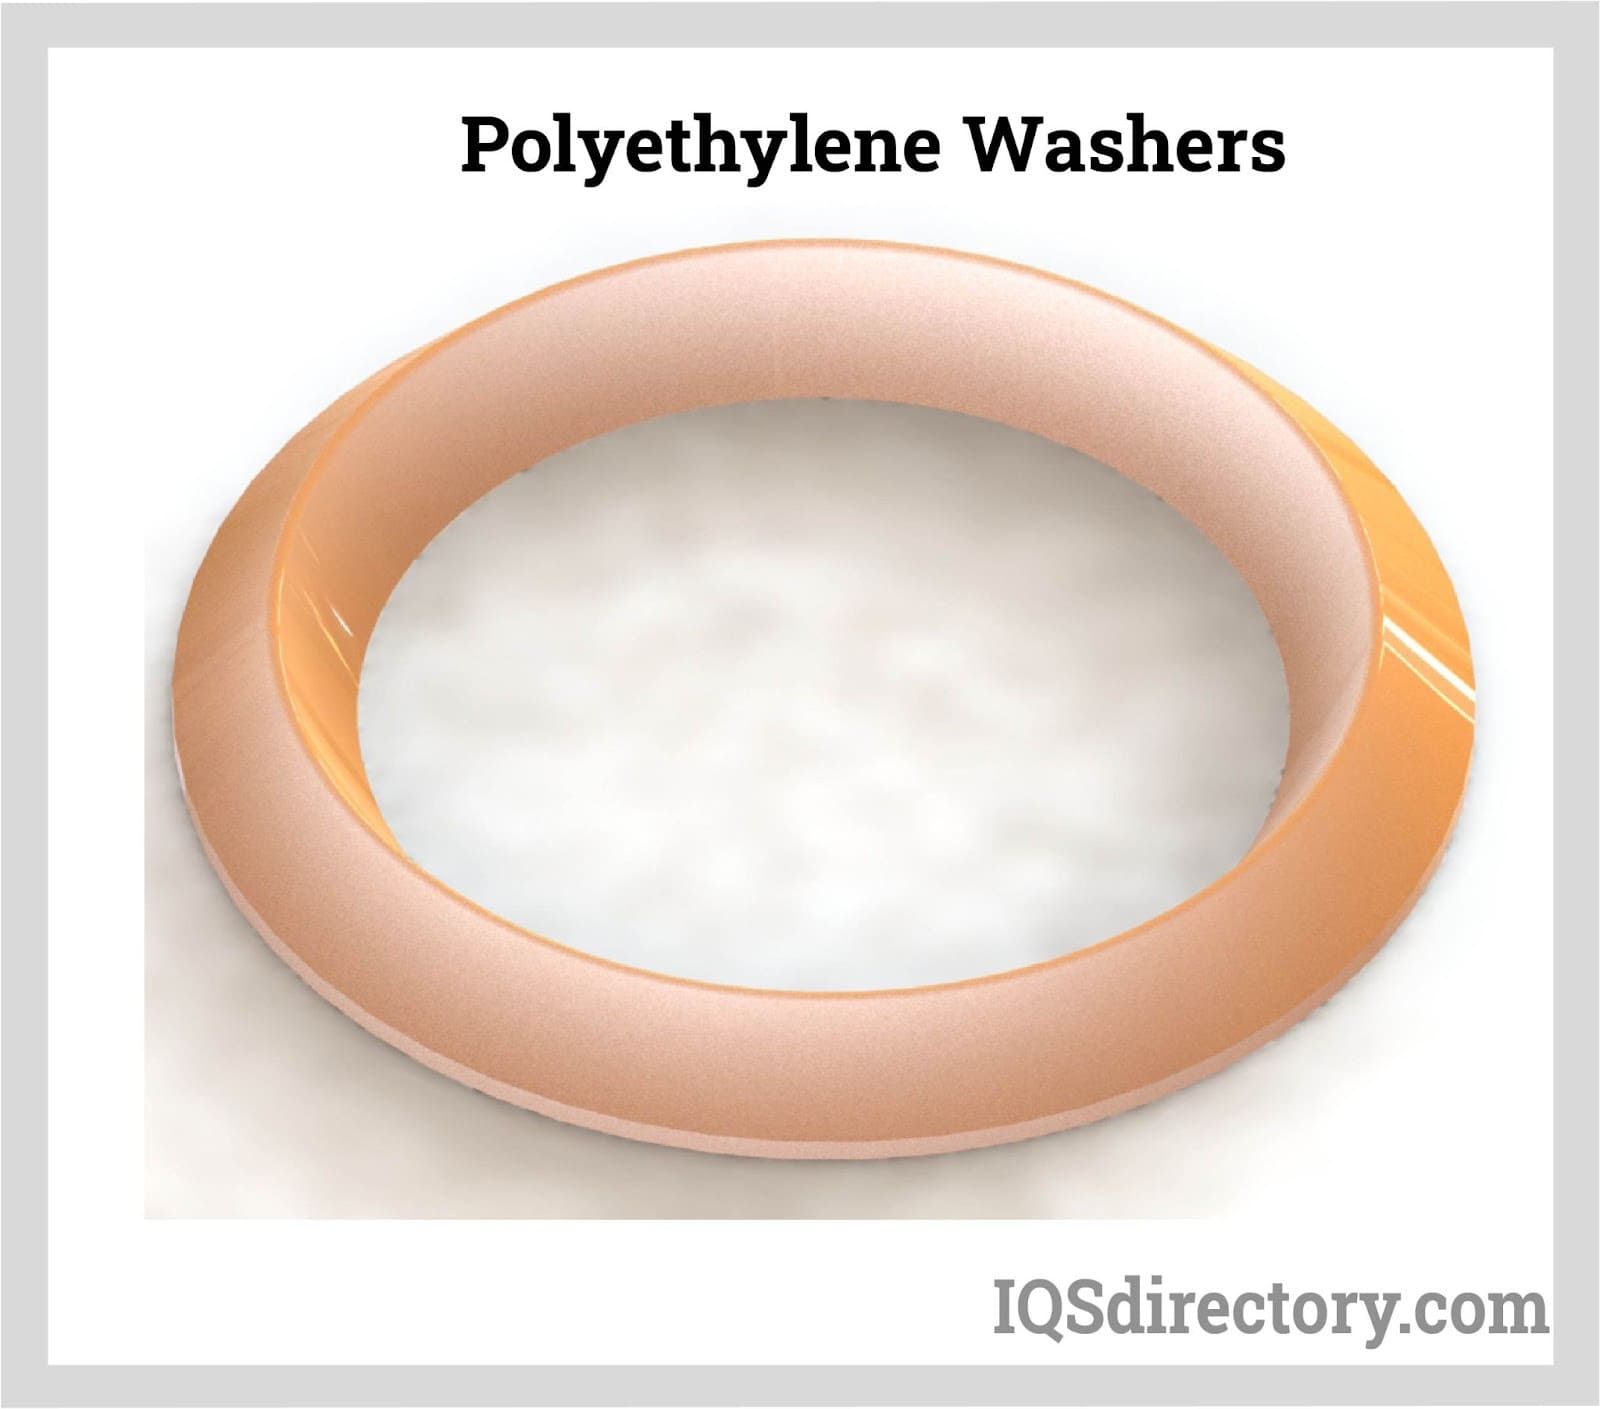 polyethylene washers